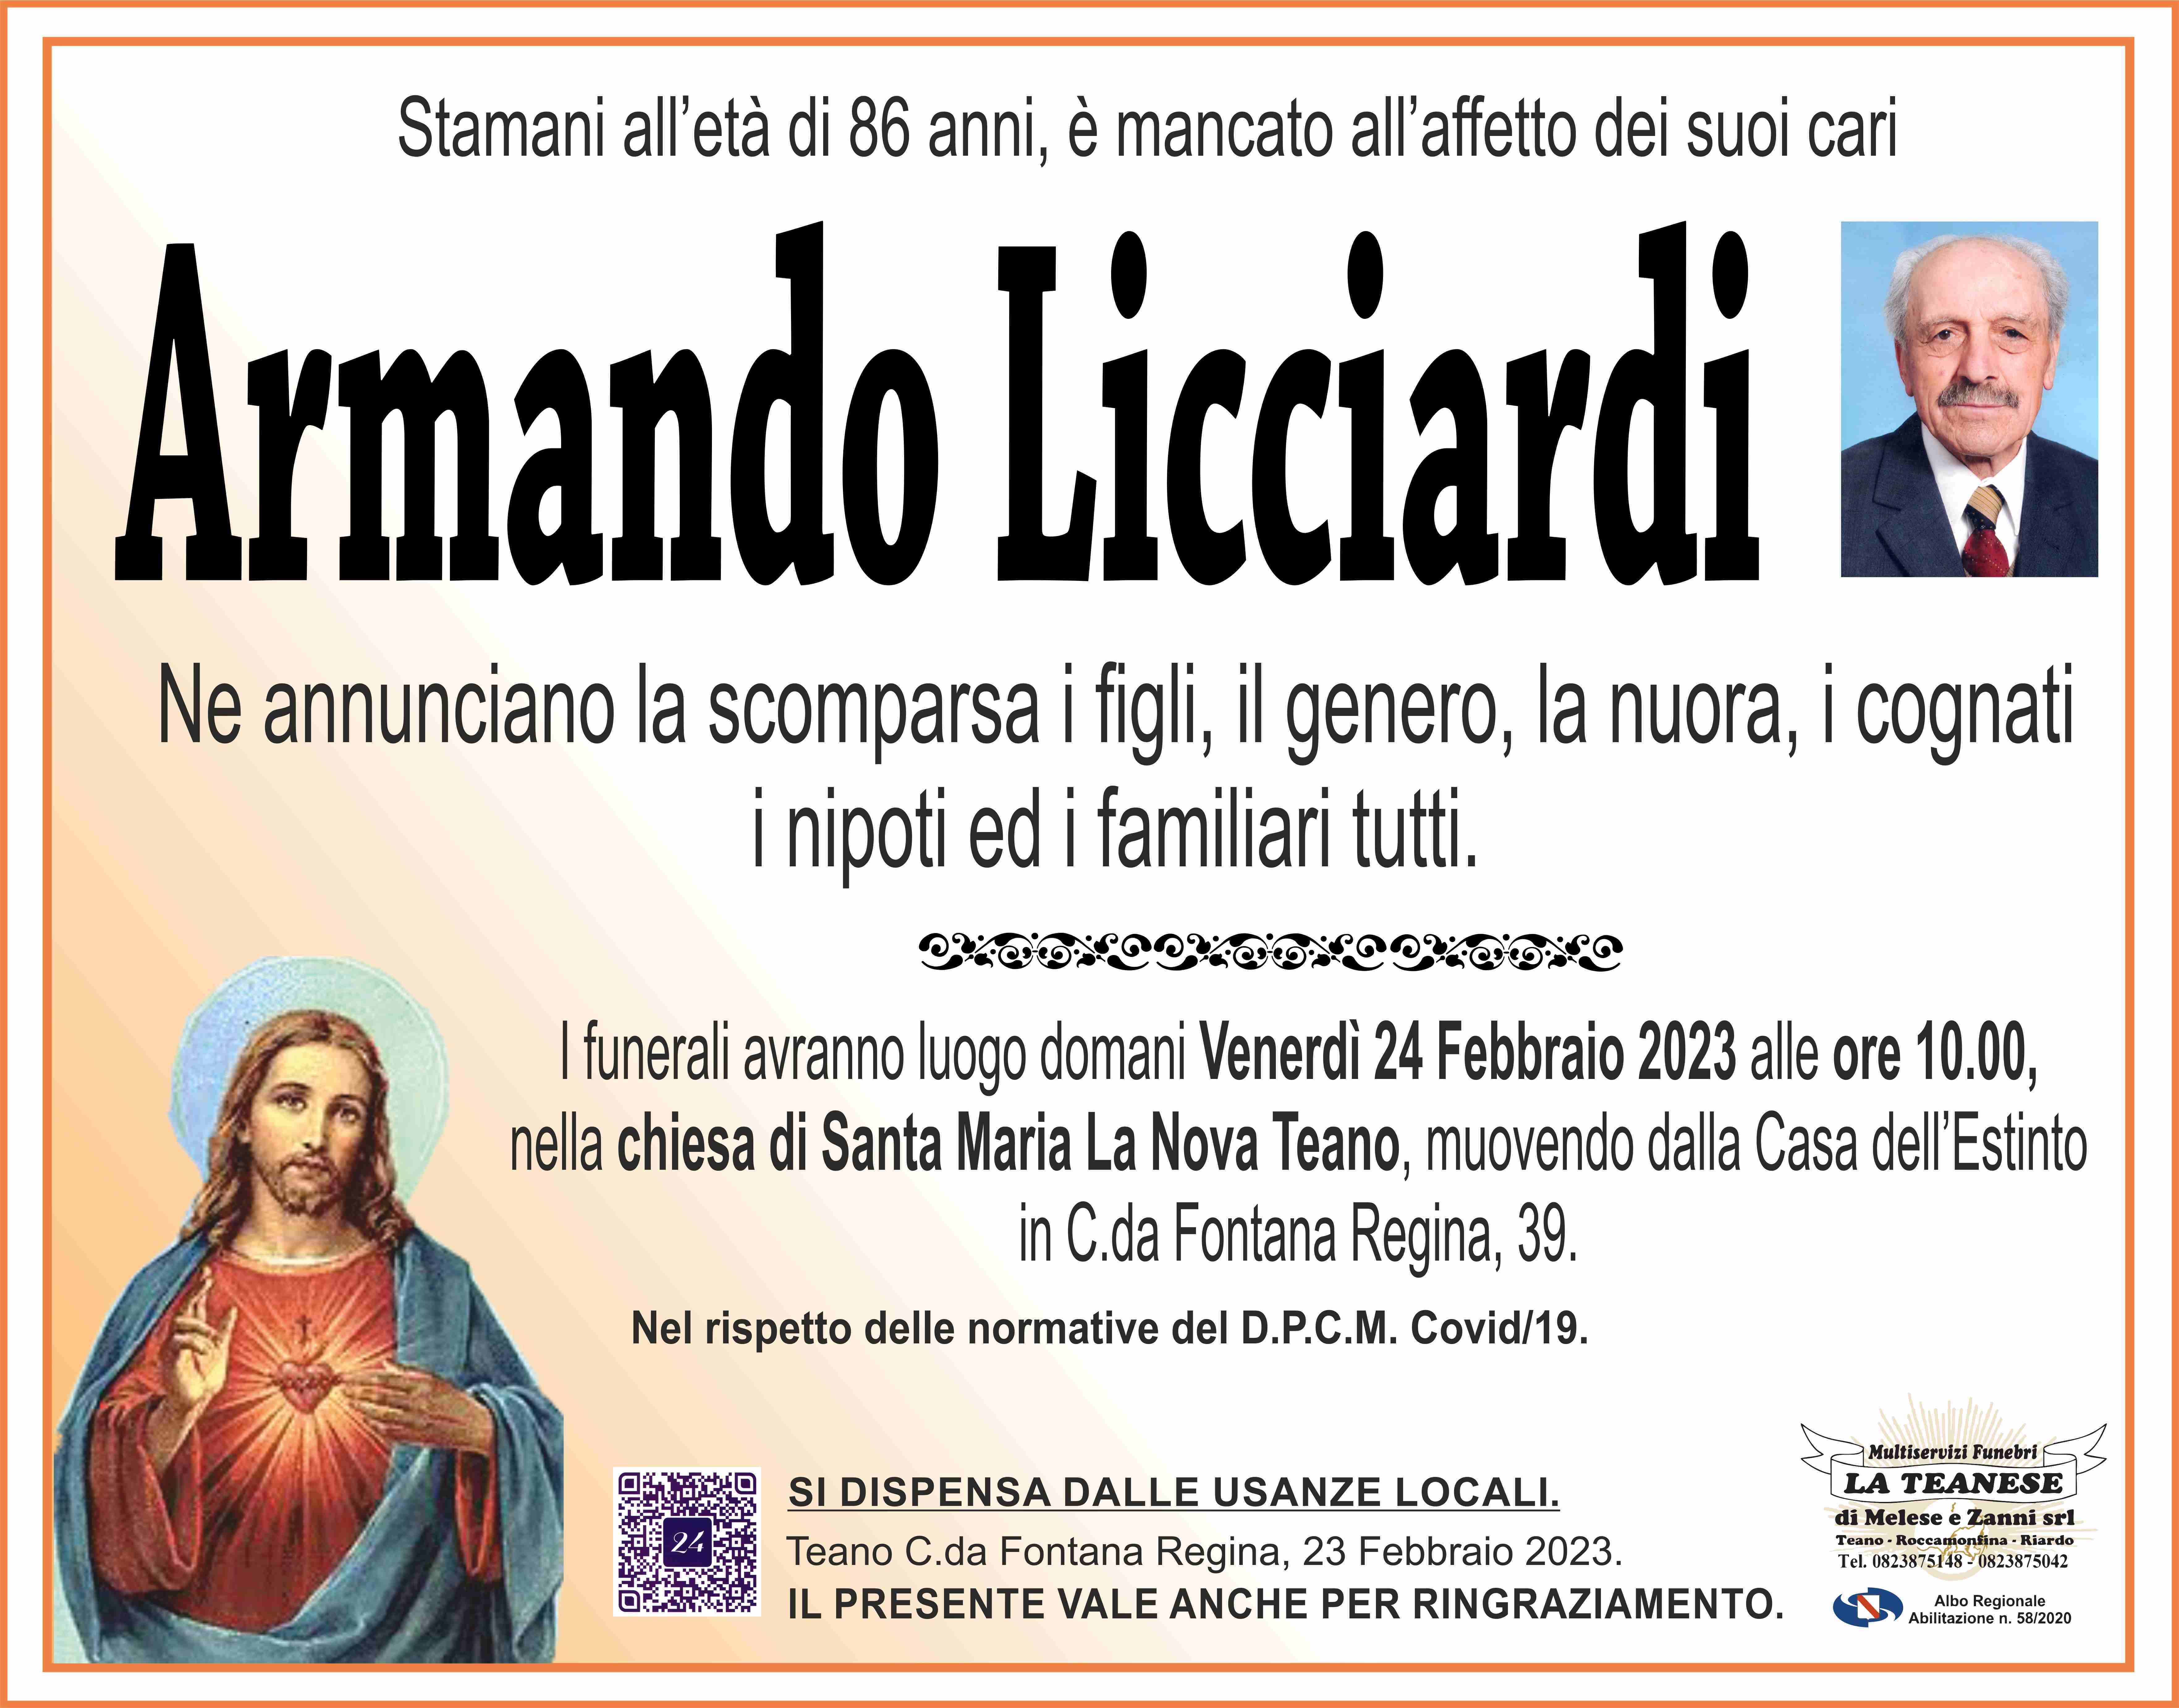 Armando Licciardi